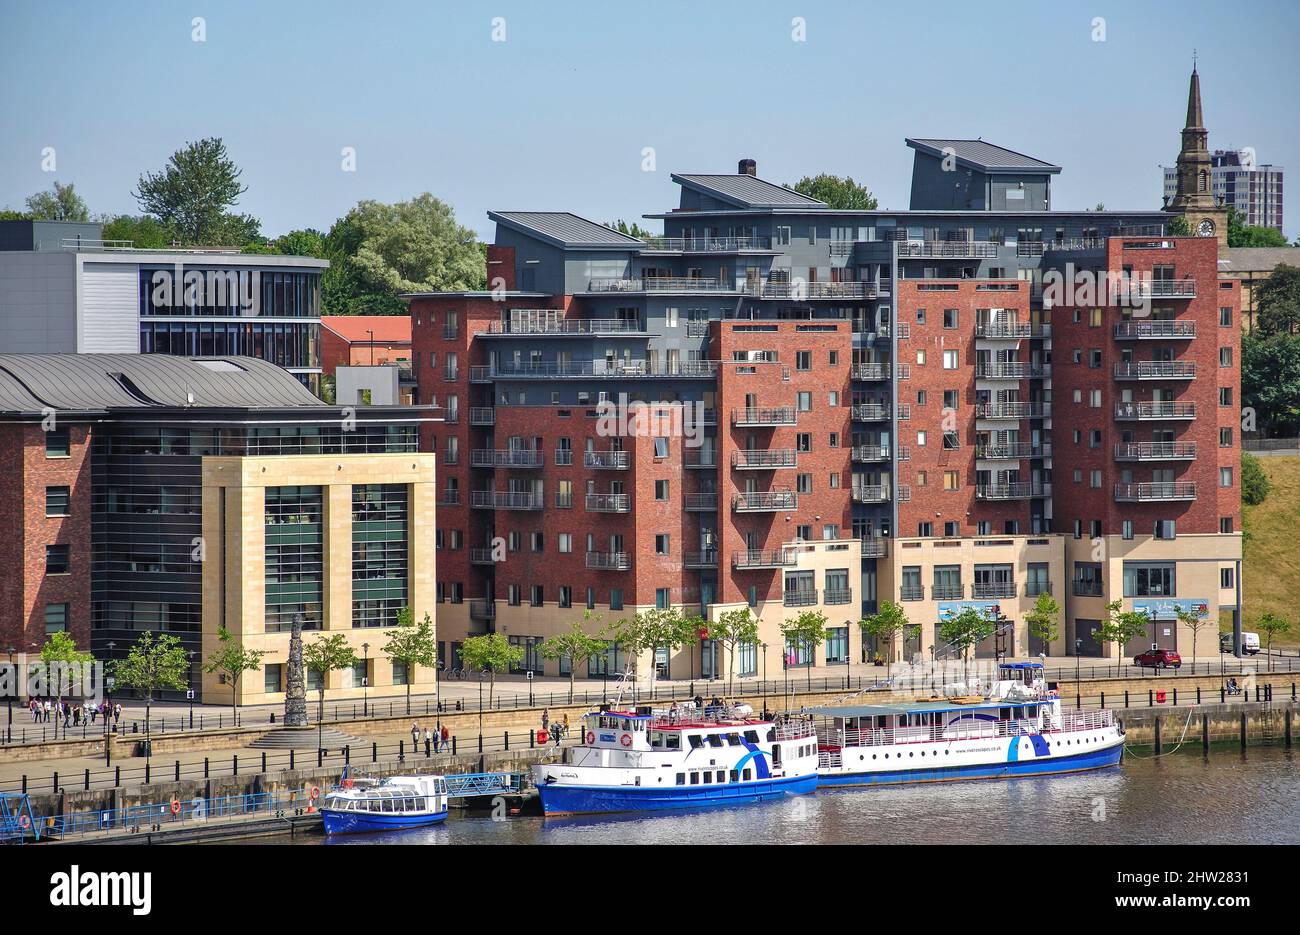 Vue sur la rivière Tyne depuis Gateshead, Tyne and Wear, Angleterre, Royaume-Uni Banque D'Images